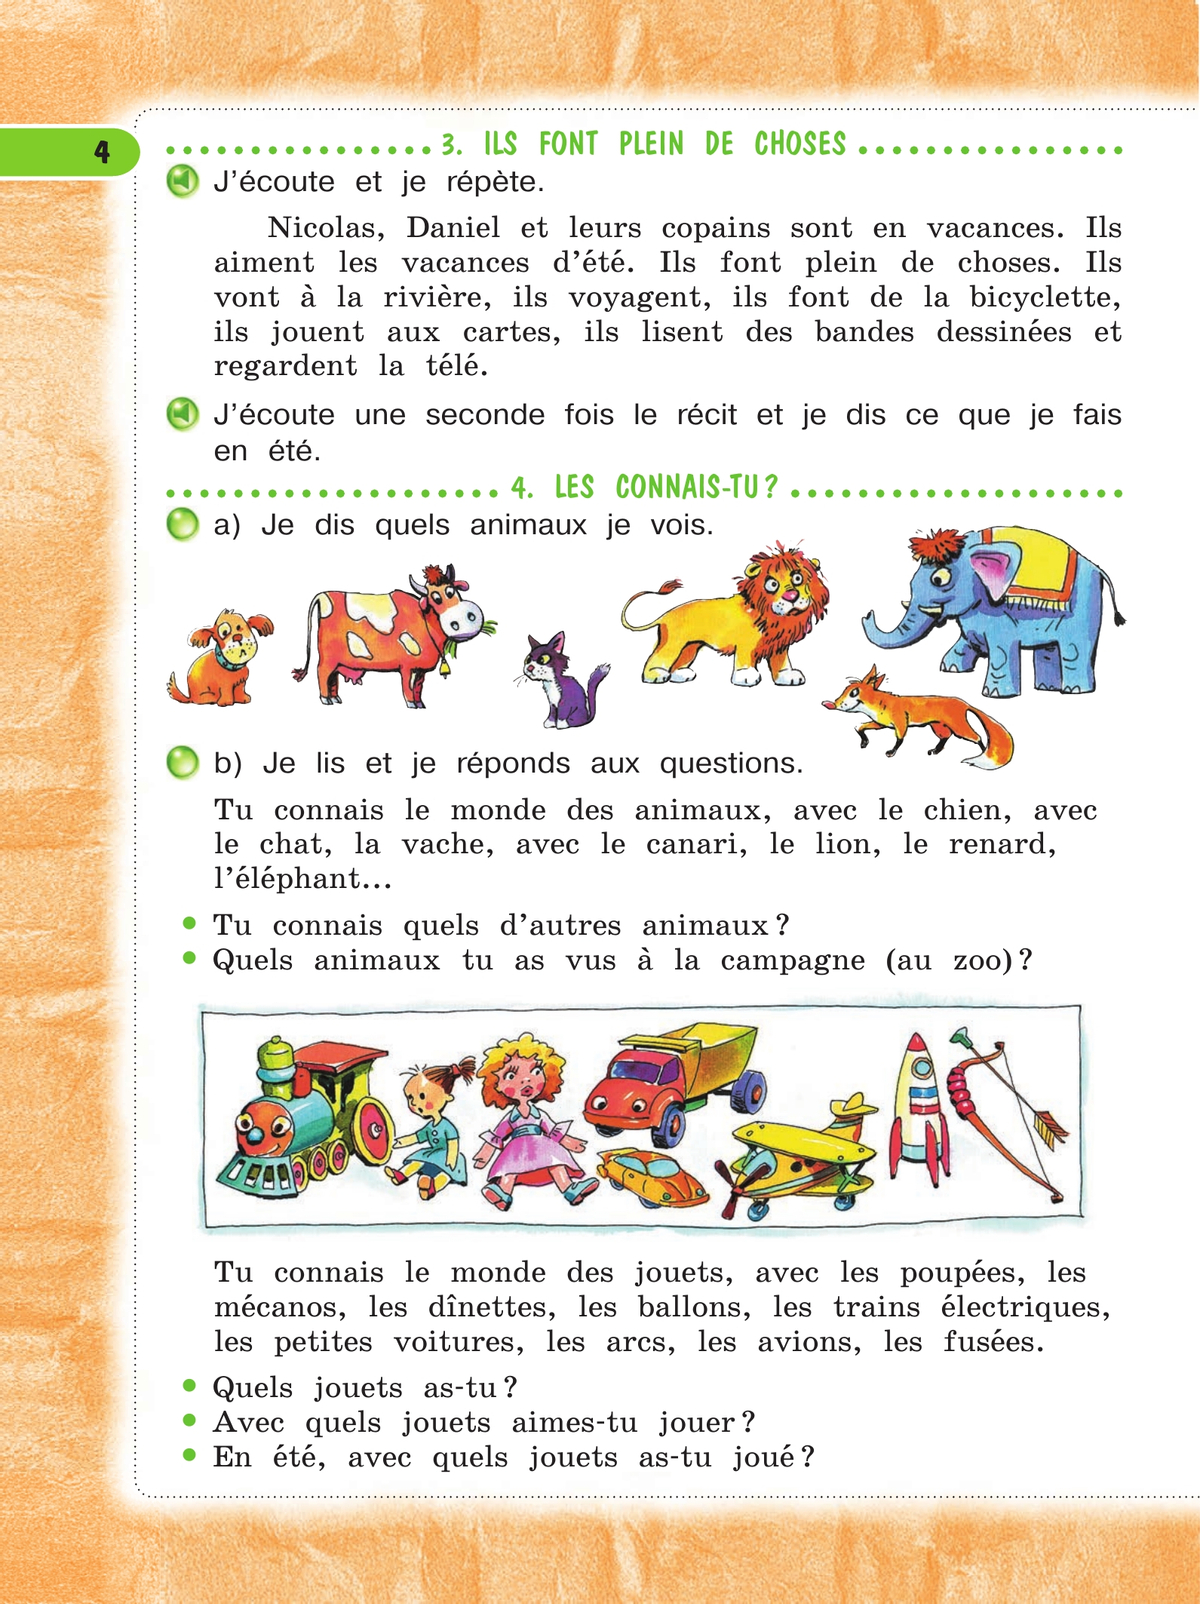 Французский язык. 4 класс. Учебник. В 2 ч. Часть 1 11